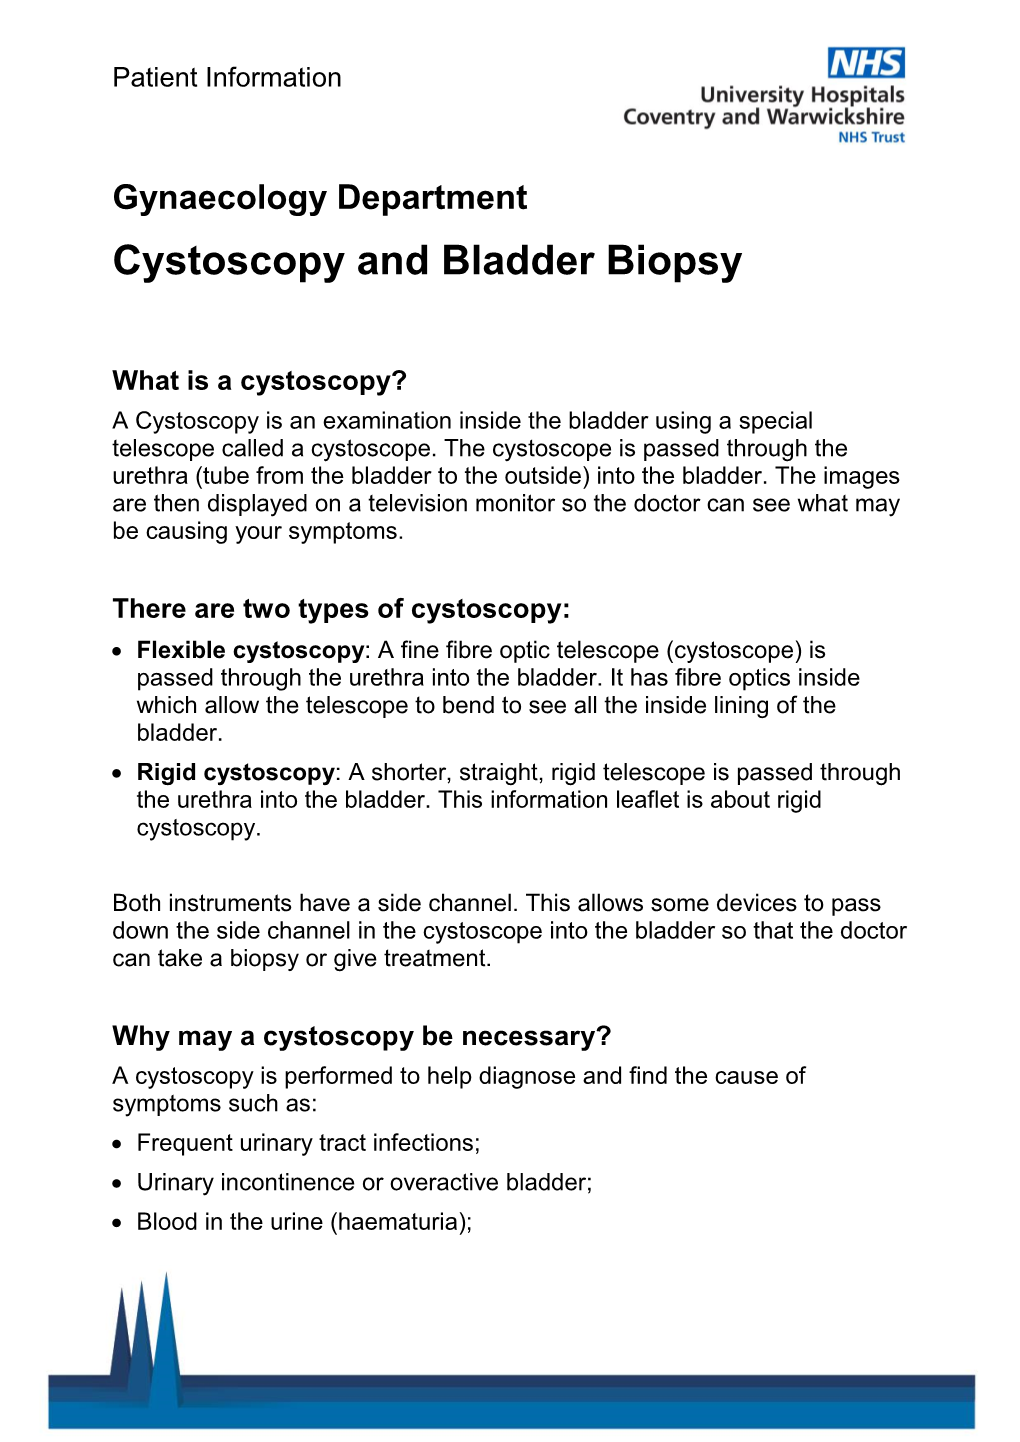 Cystoscopy and Bladder Biopsy (Gynaecology)